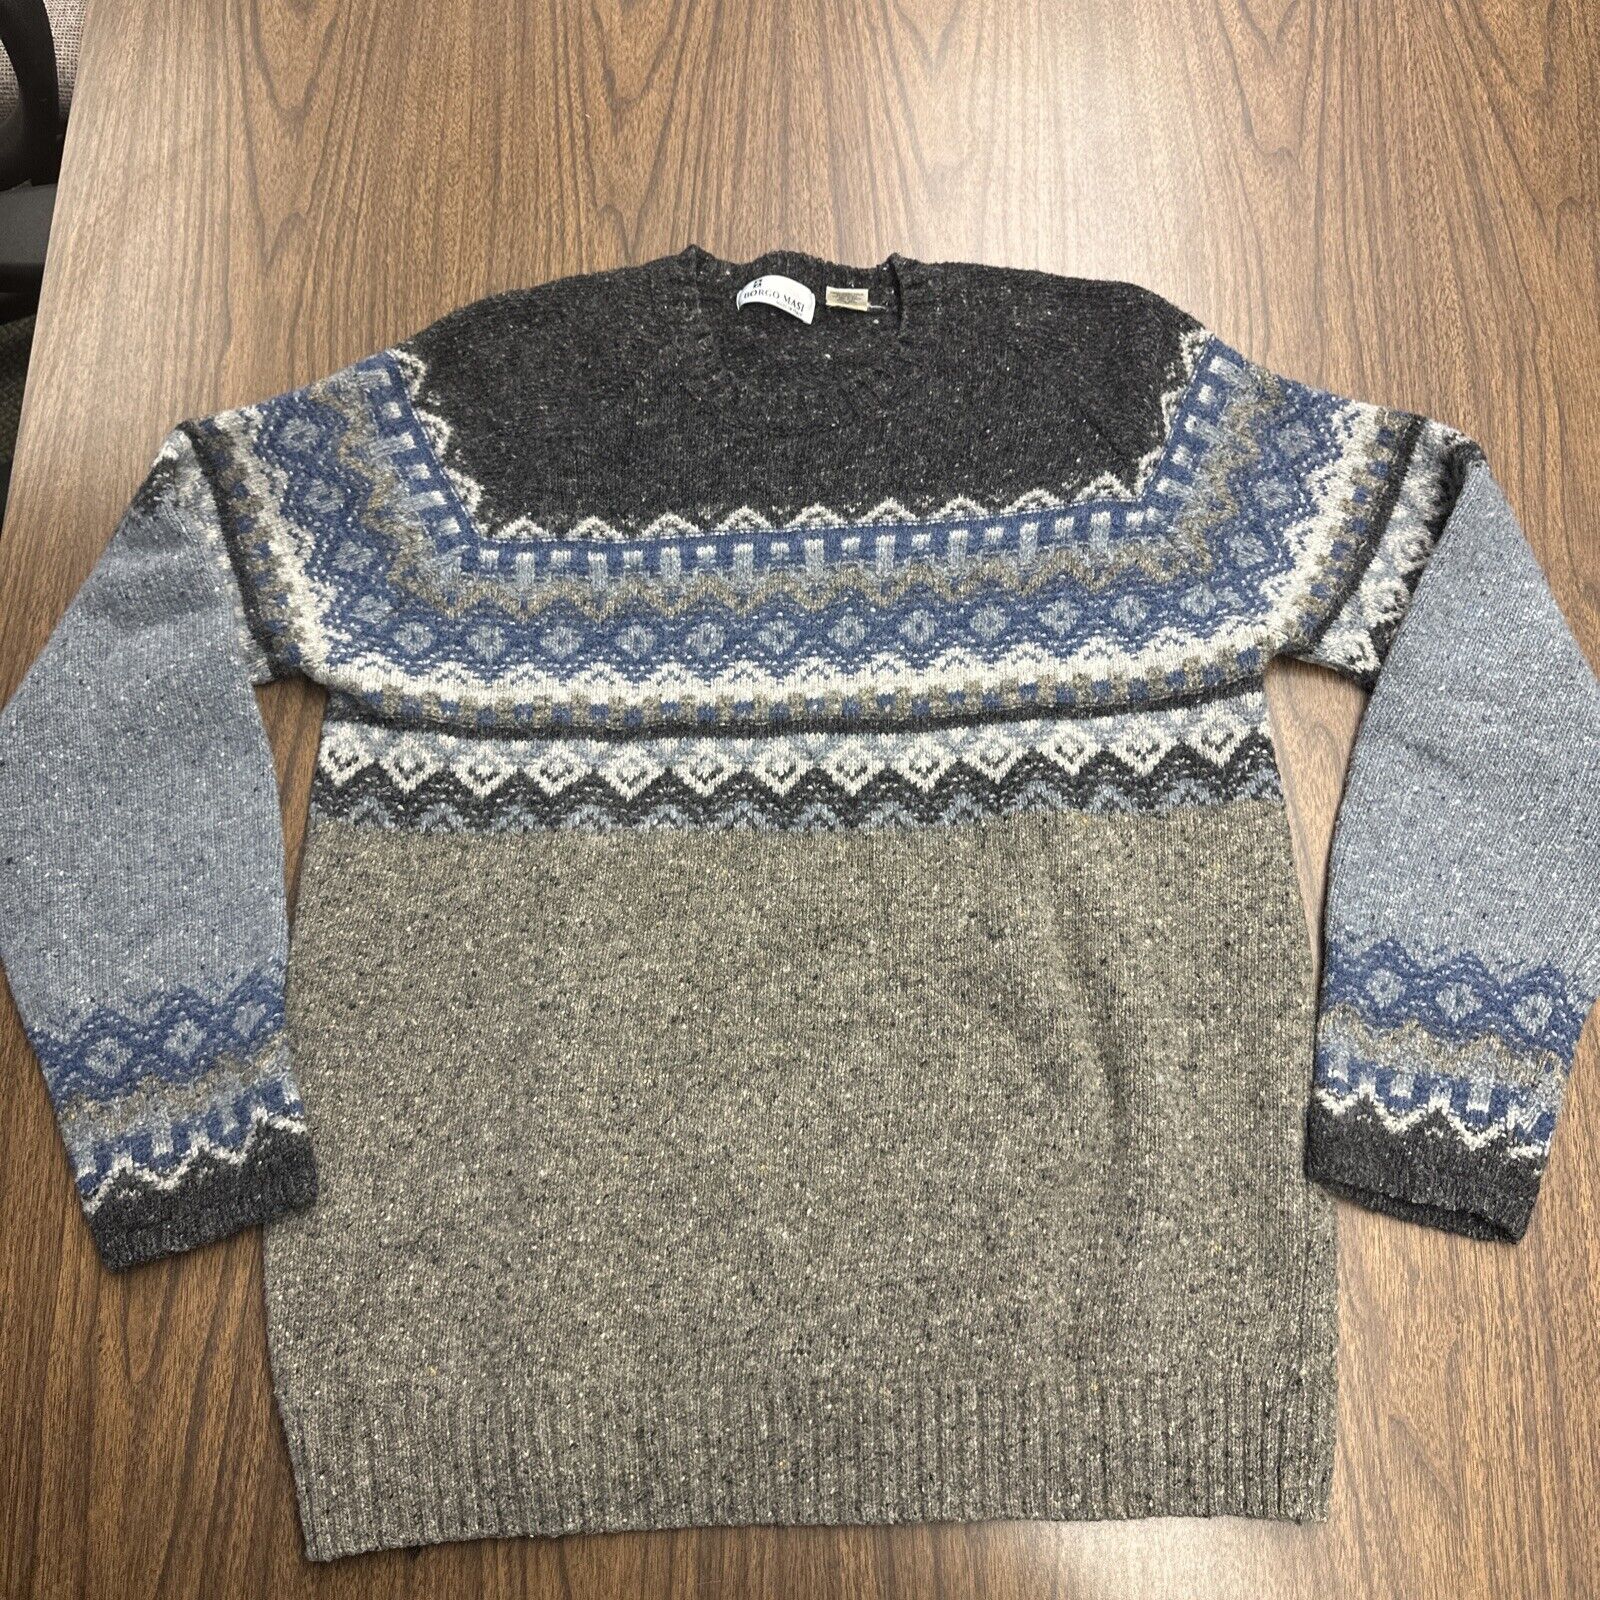 Borgo Masi 80% wool 20% Nylon Round Neck Gray Sweater Made ITALY Sz Large